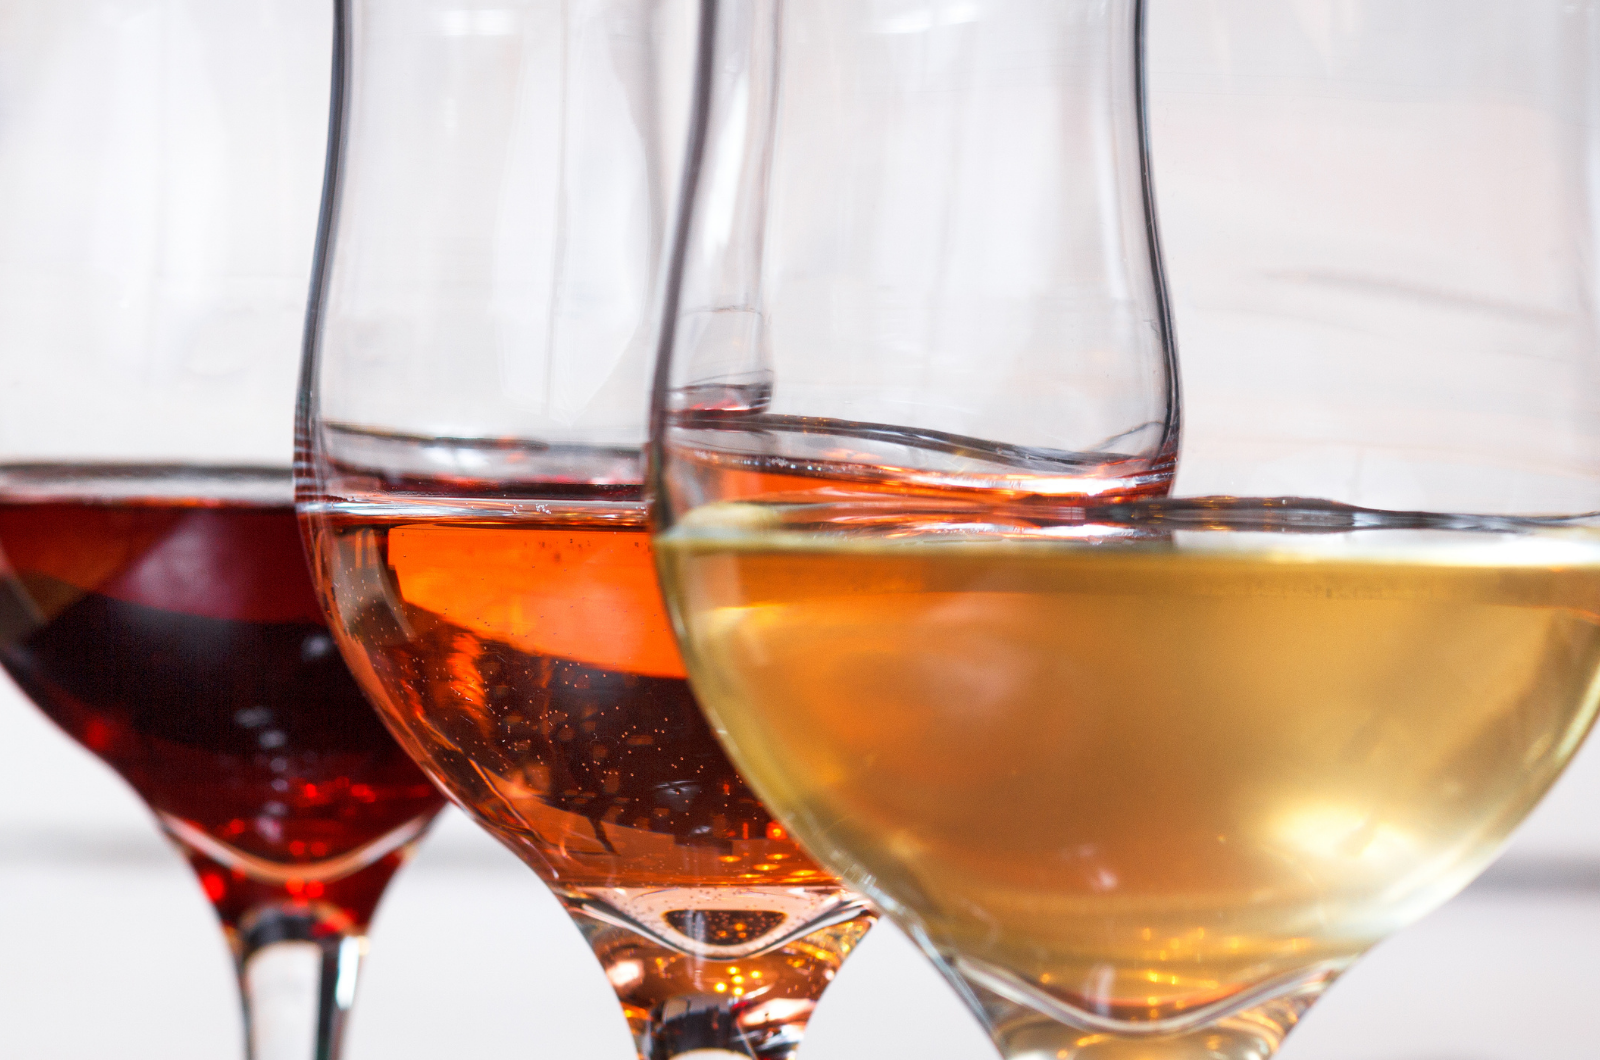 כוסות יין – כיצד לבחור את הטובה ביותר עבור היין שלך?